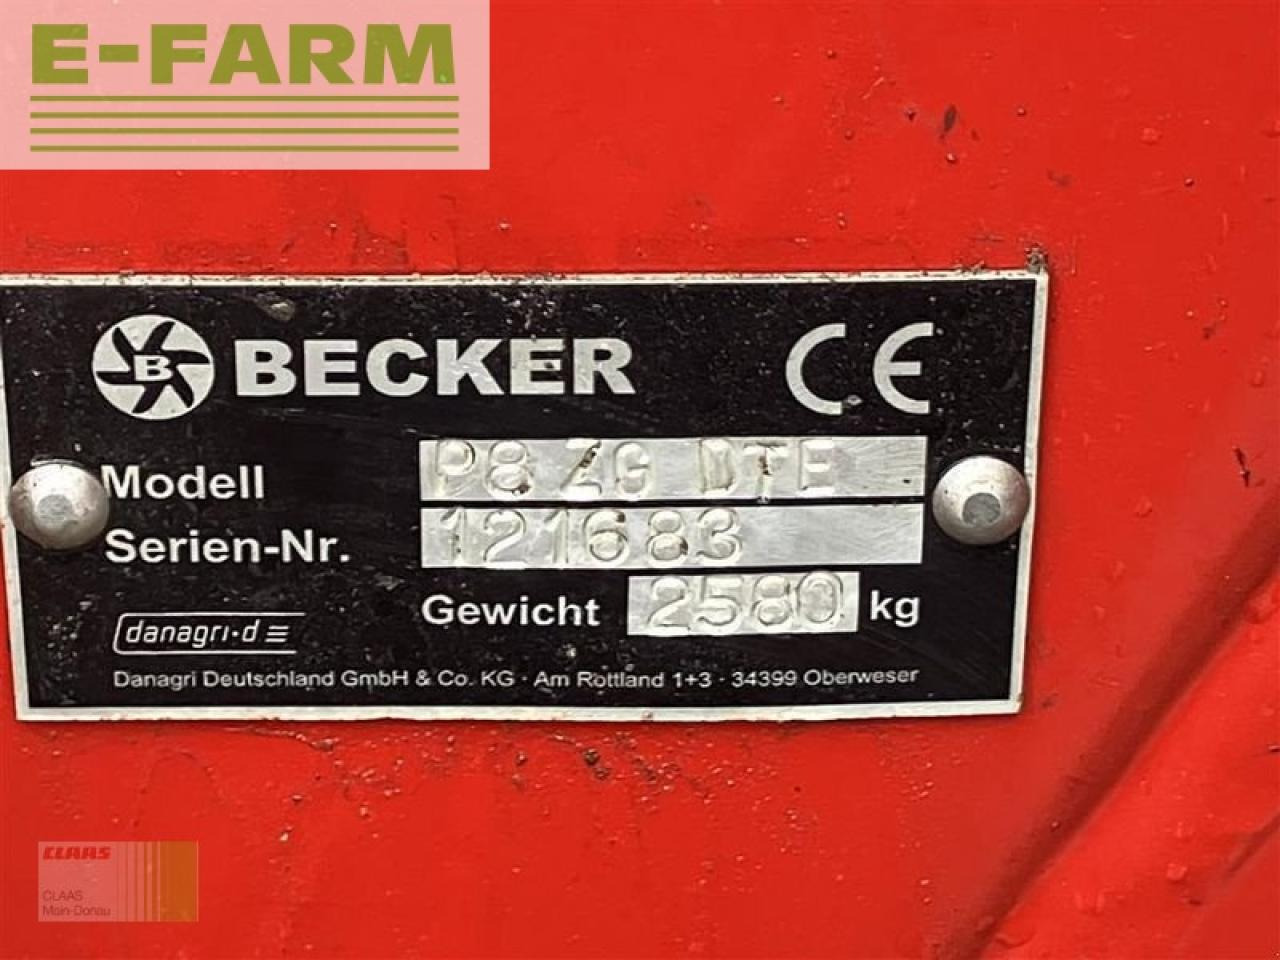 Sembradora de precisión Becker aeromat p8 zg dte: foto 18